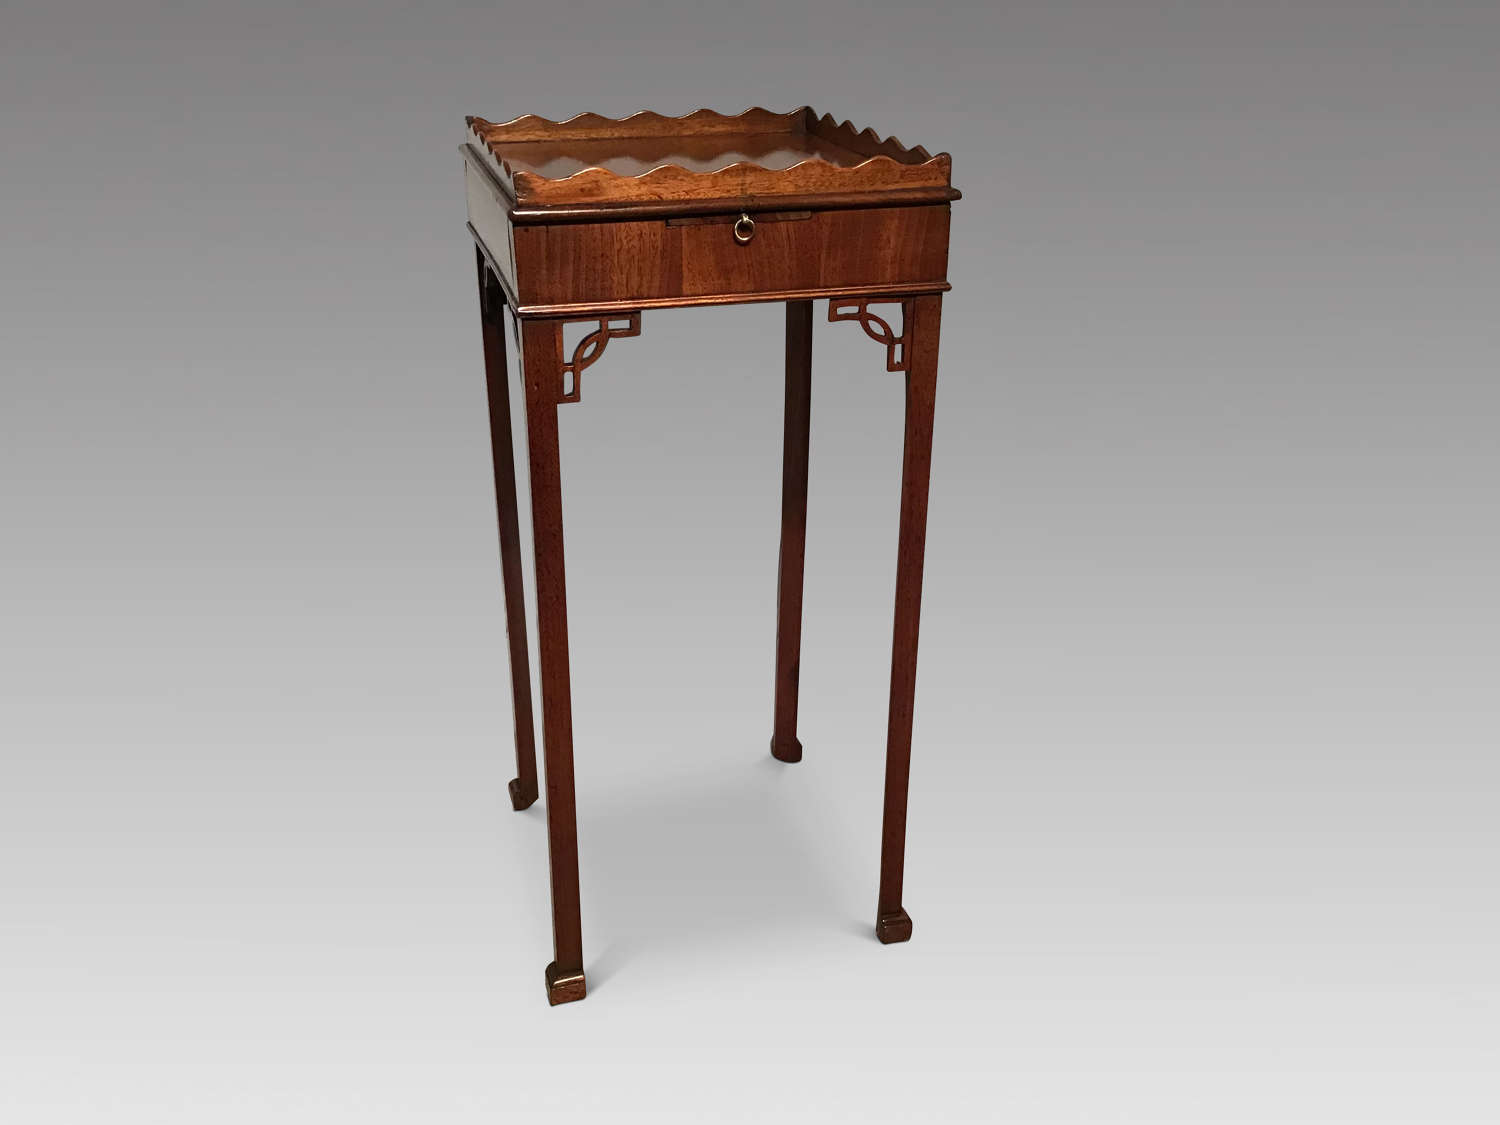 19th century mahogany urn stand